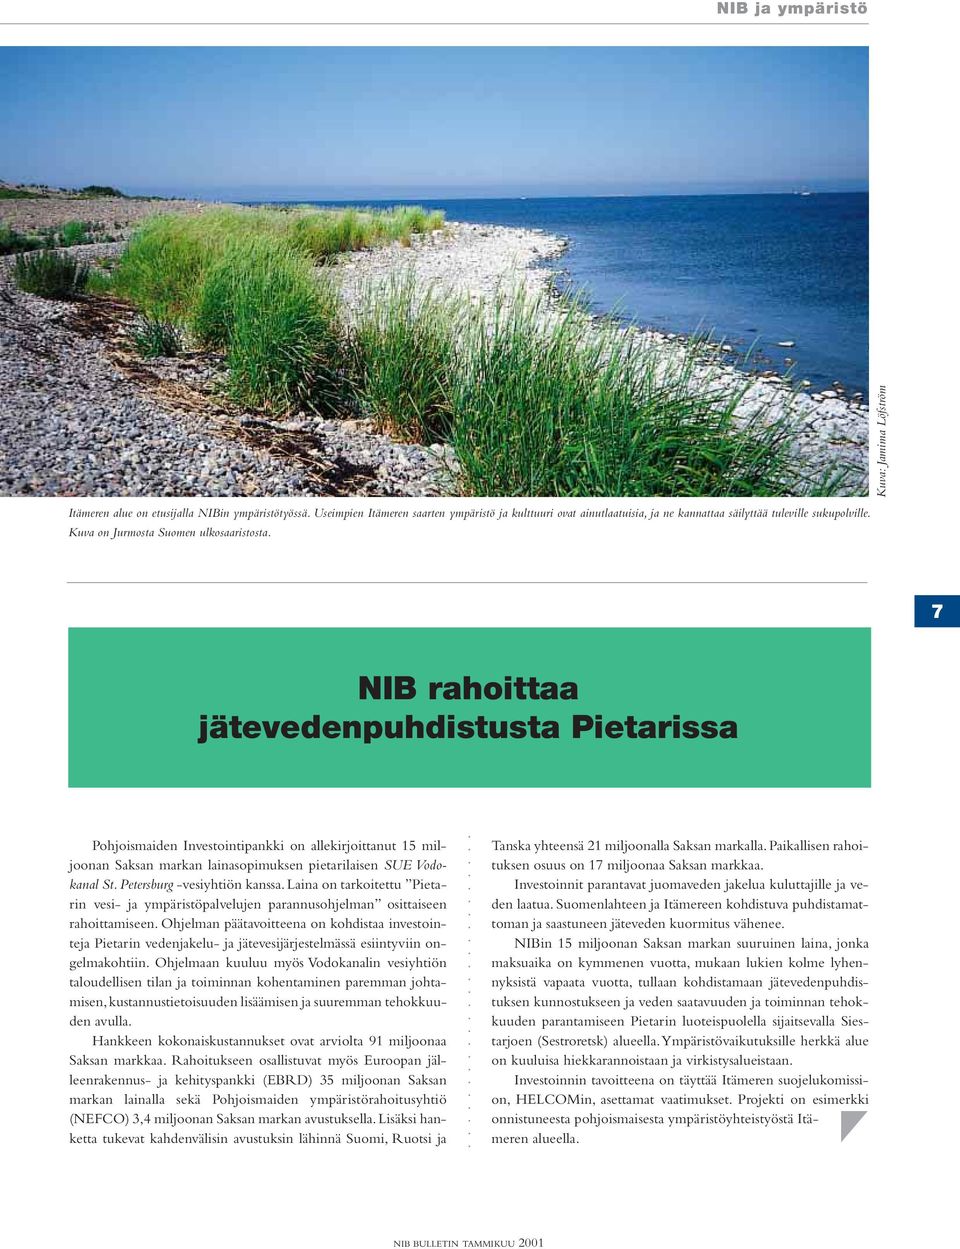 7 NIB rahoittaa jätevedenpuhdistusta Pietarissa Pohjoismaiden Investointipankki on allekirjoittanut 15 miljoonan Saksan markan lainasopimuksen pietarilaisen SUE Vodokanal St.